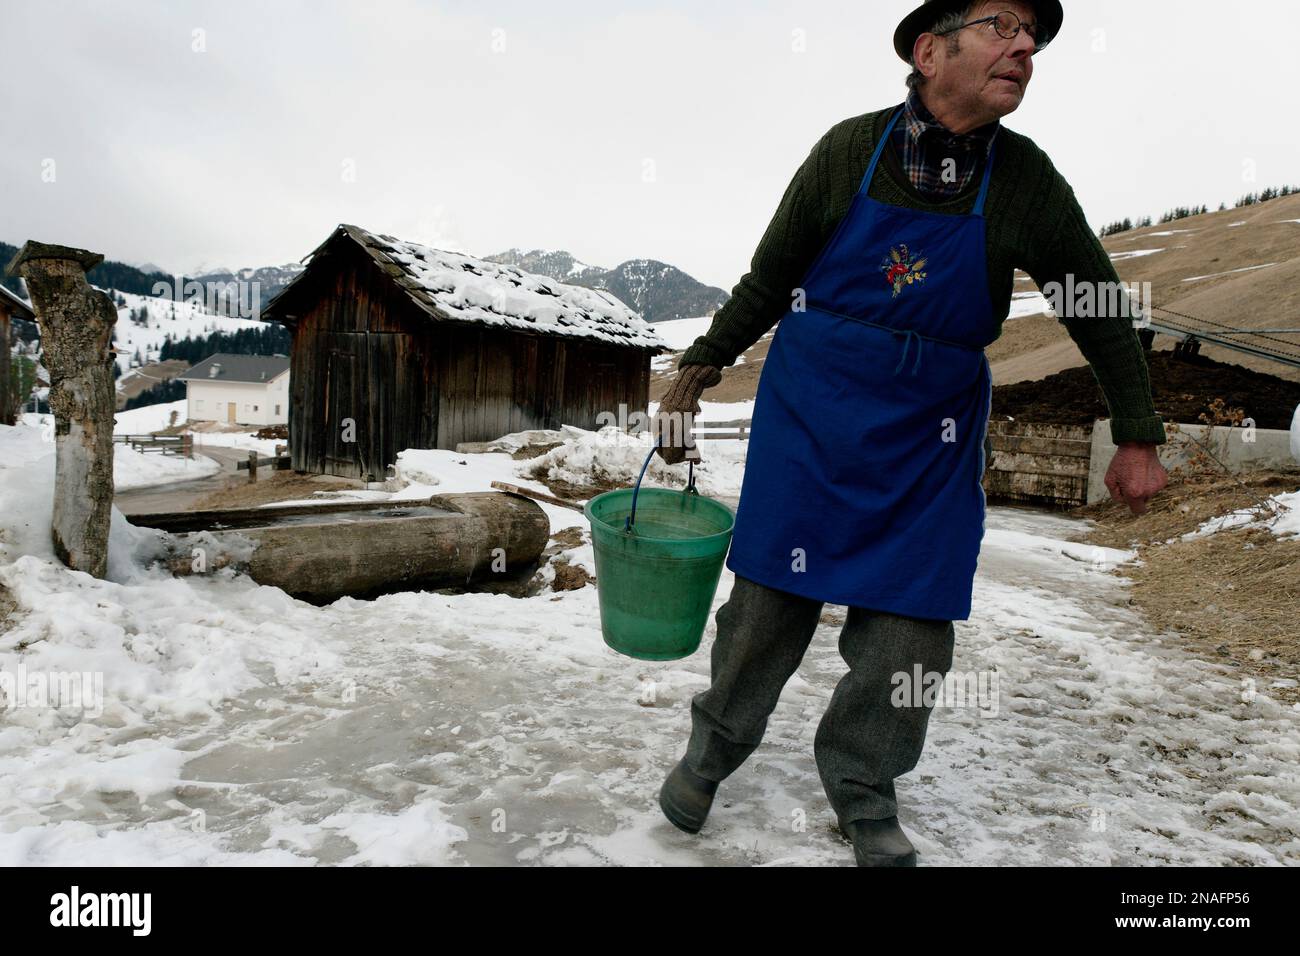 L'uomo ladino raccoglie un secchio d'acqua da una fossa di bestiame e attraversa con attenzione un foglio di ghiaccio. La vita e' dura in villaggi rurali e isolati, lik... Foto Stock